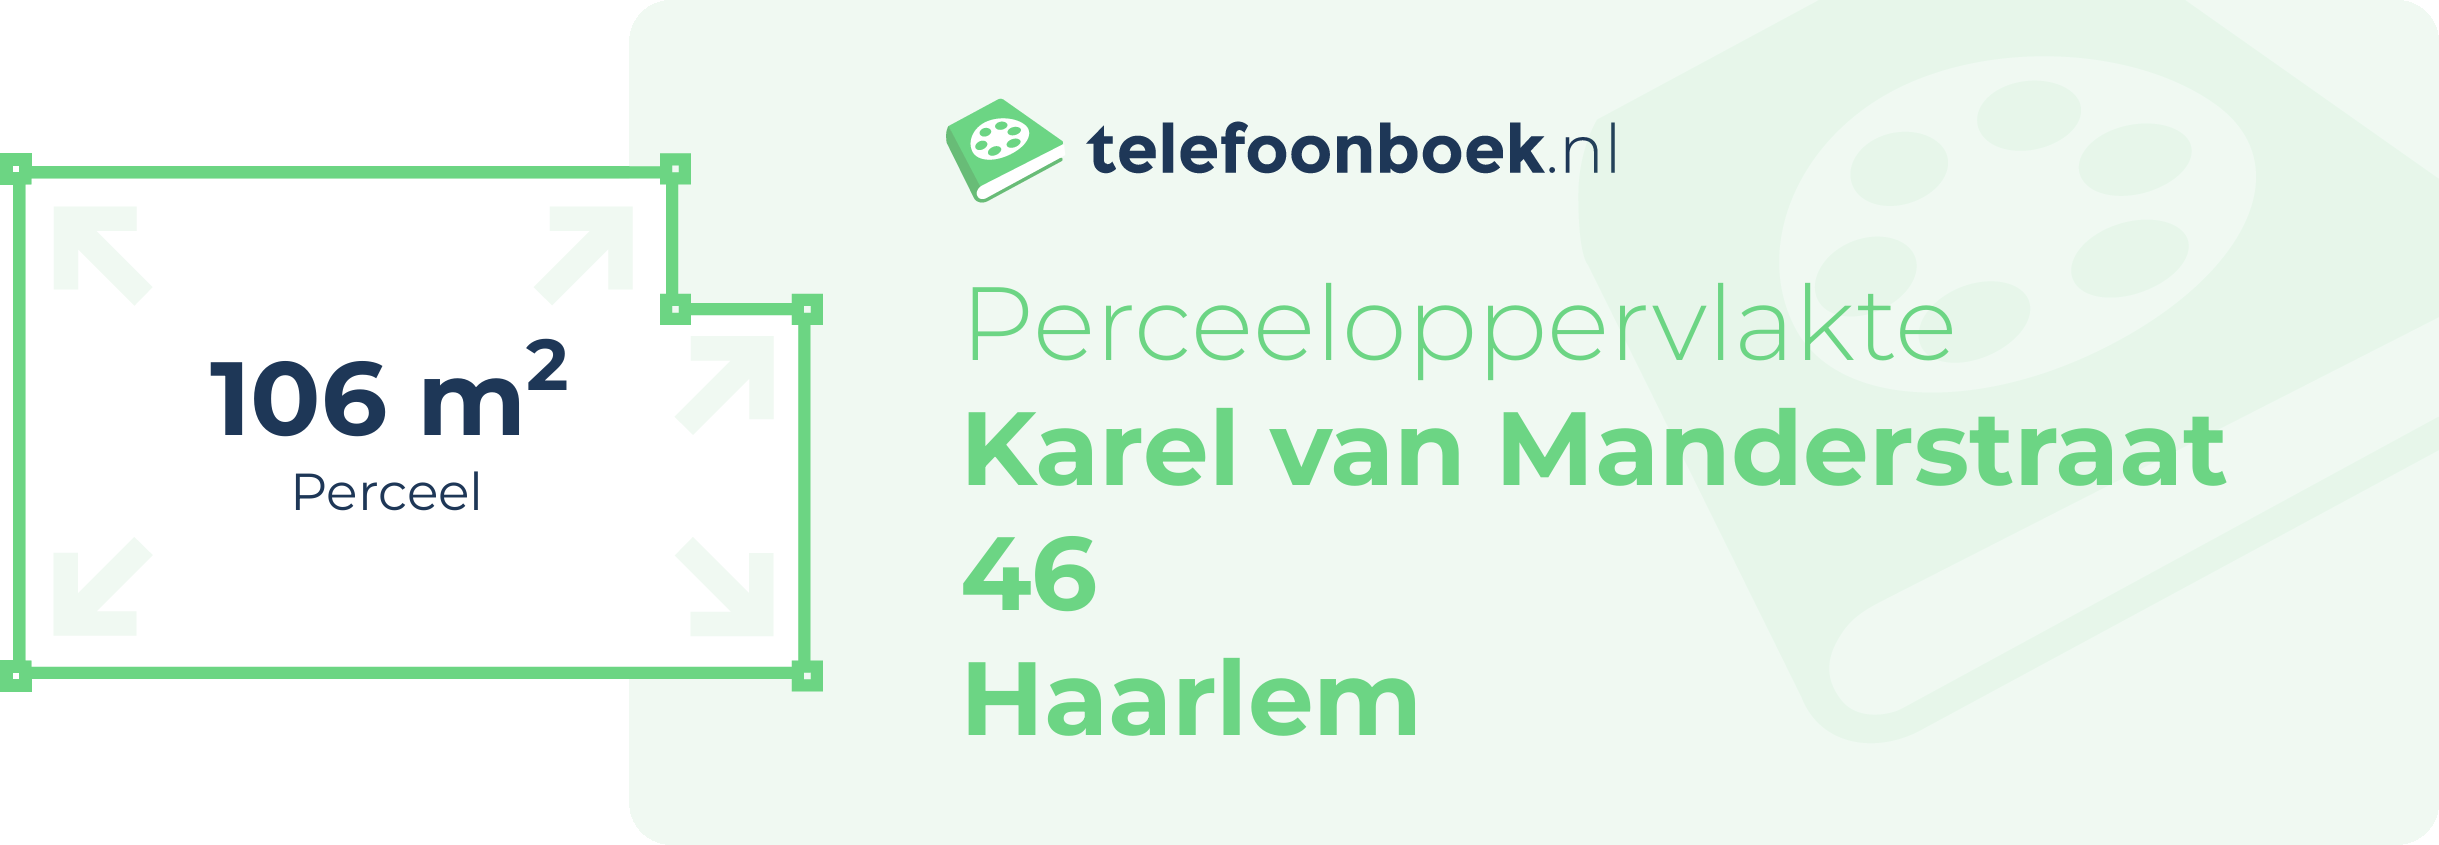 Perceeloppervlakte Karel Van Manderstraat 46 Haarlem